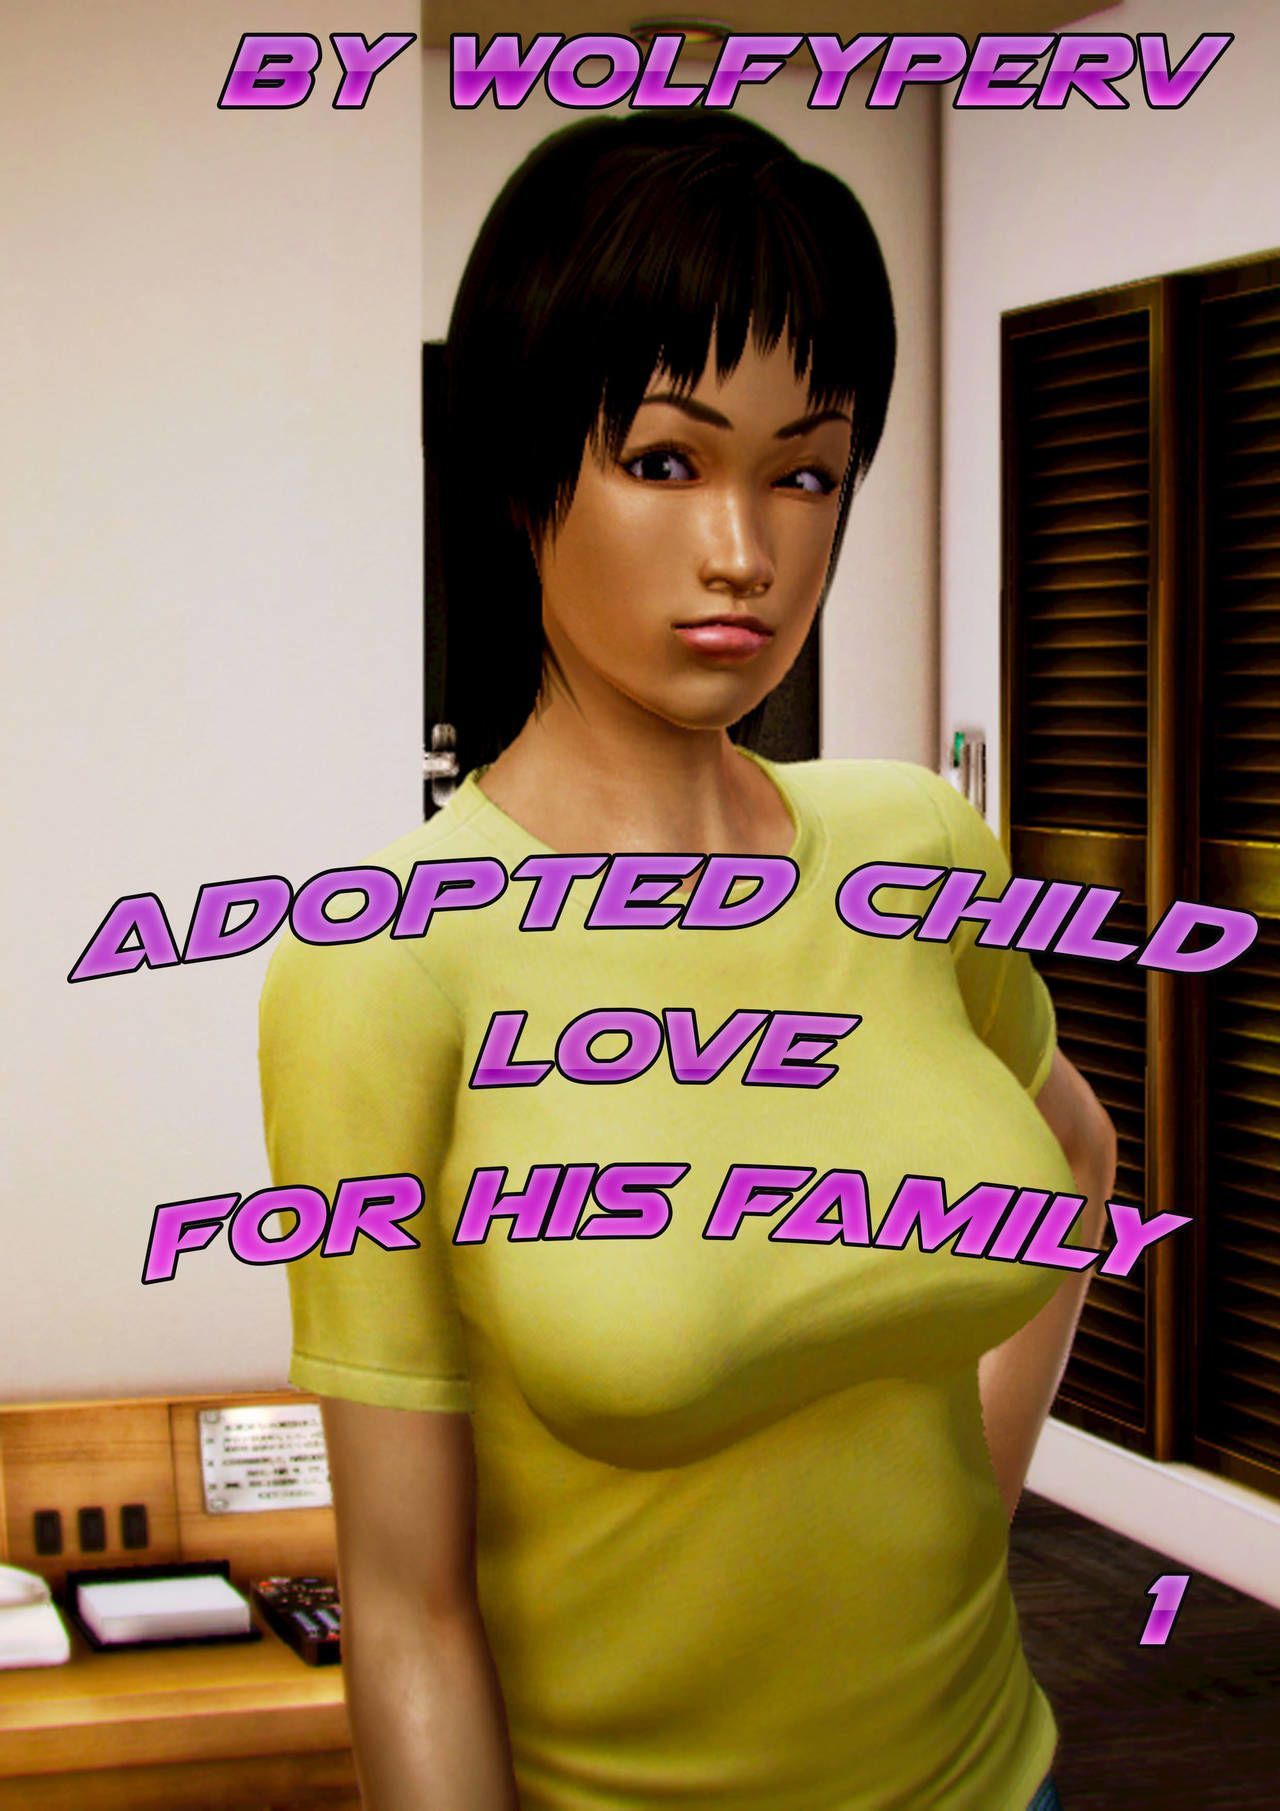 [wolfyperv] angenommen Kind Liebe für seine Familie 1